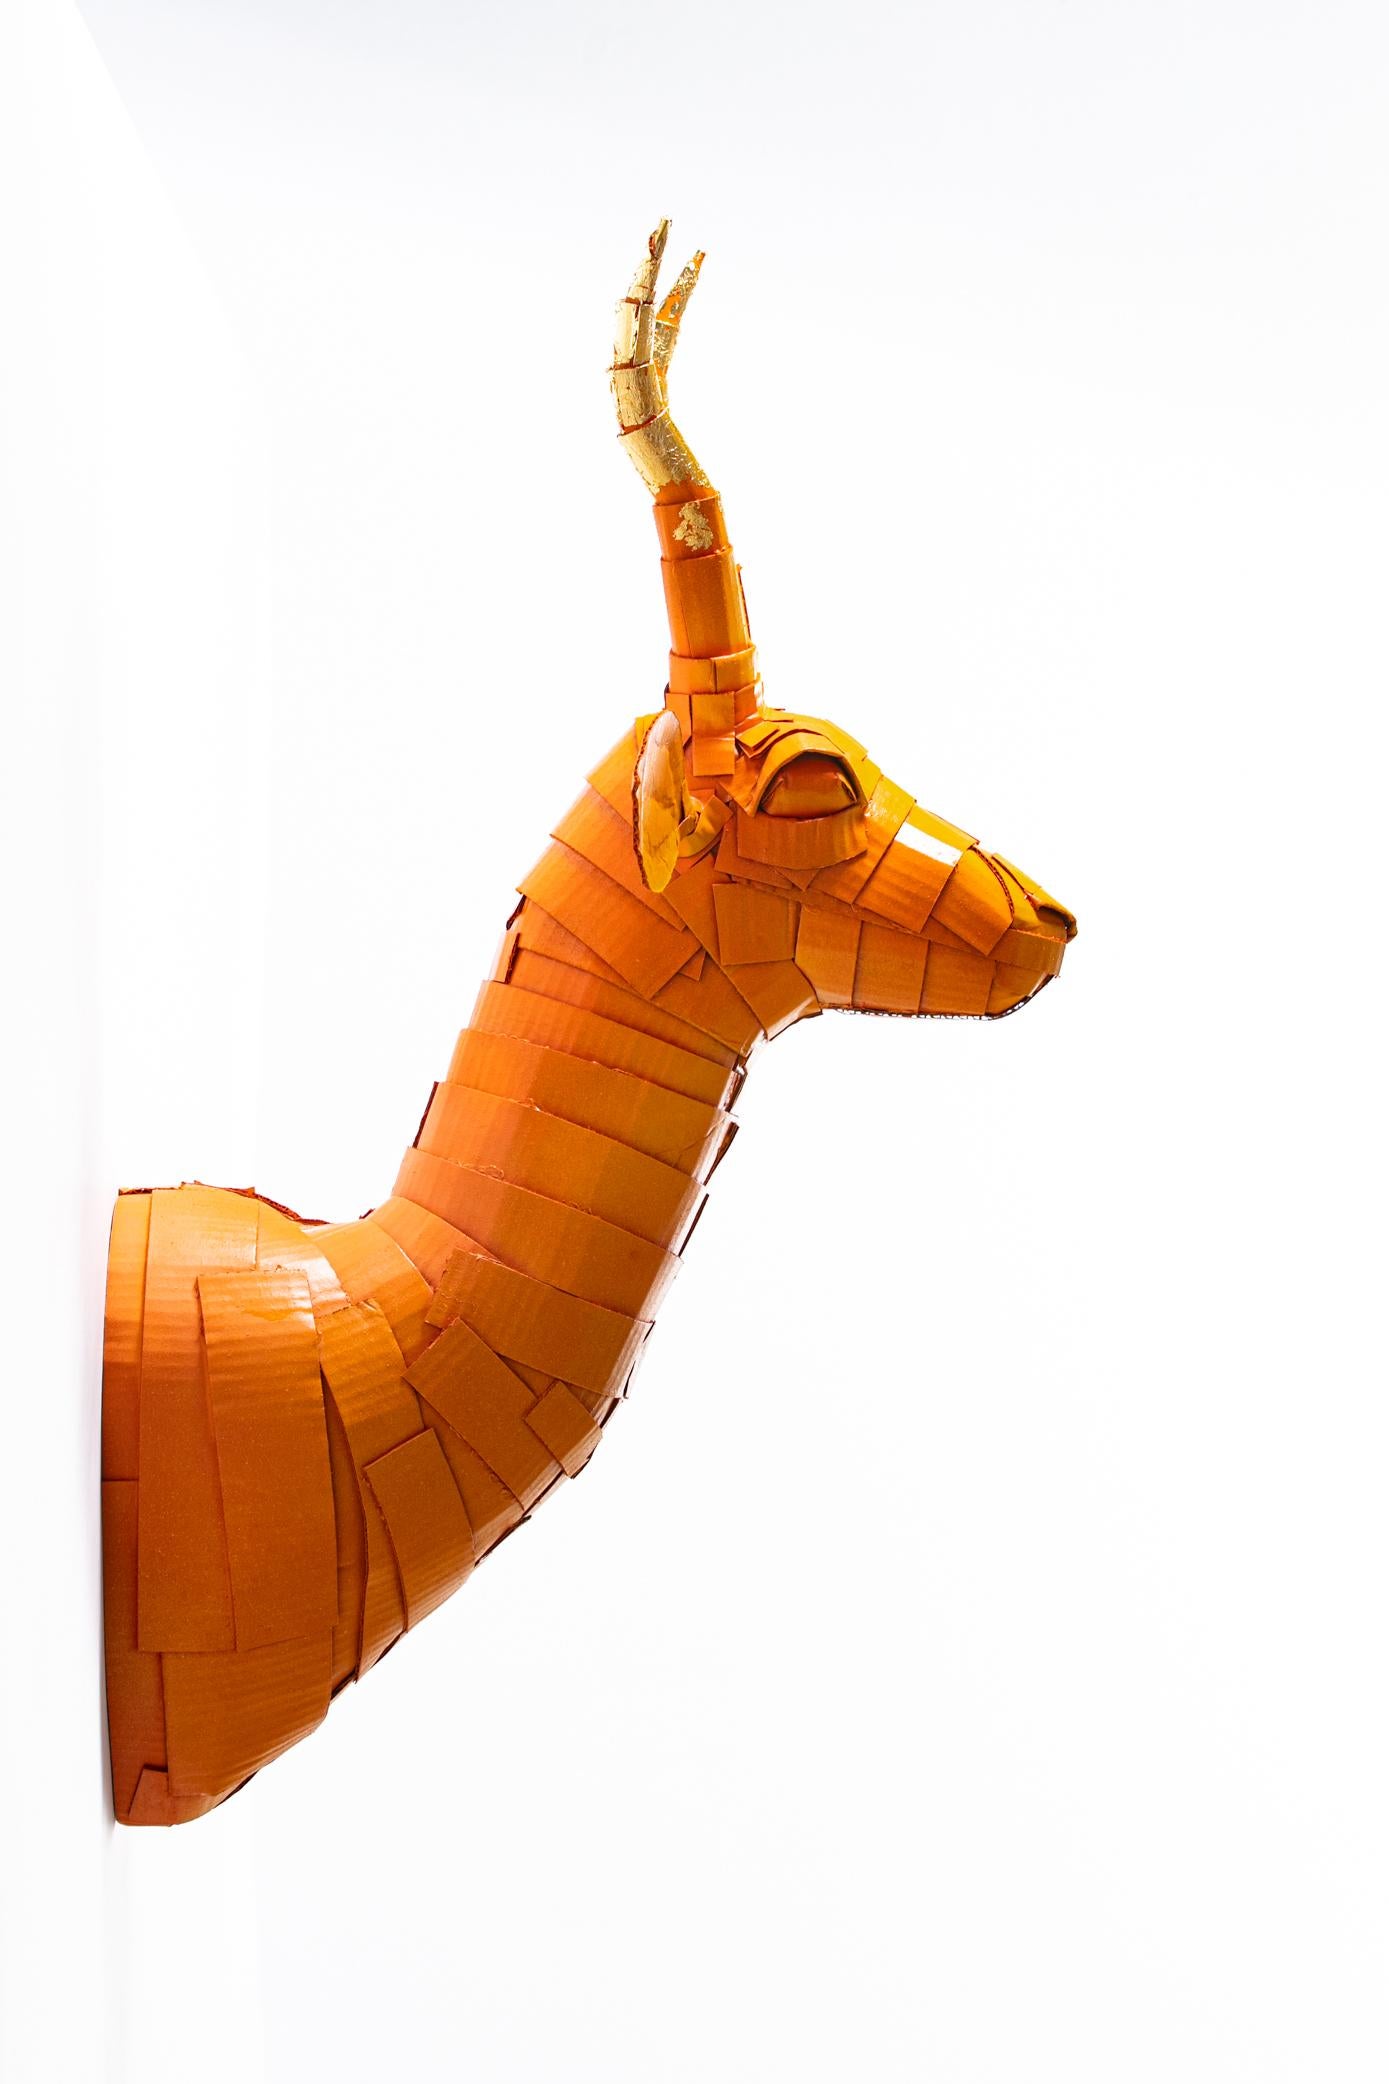 Gazelle n° 5 orange pêche avec détails en corne de feuille d'or - Contemporain Art par Justin King